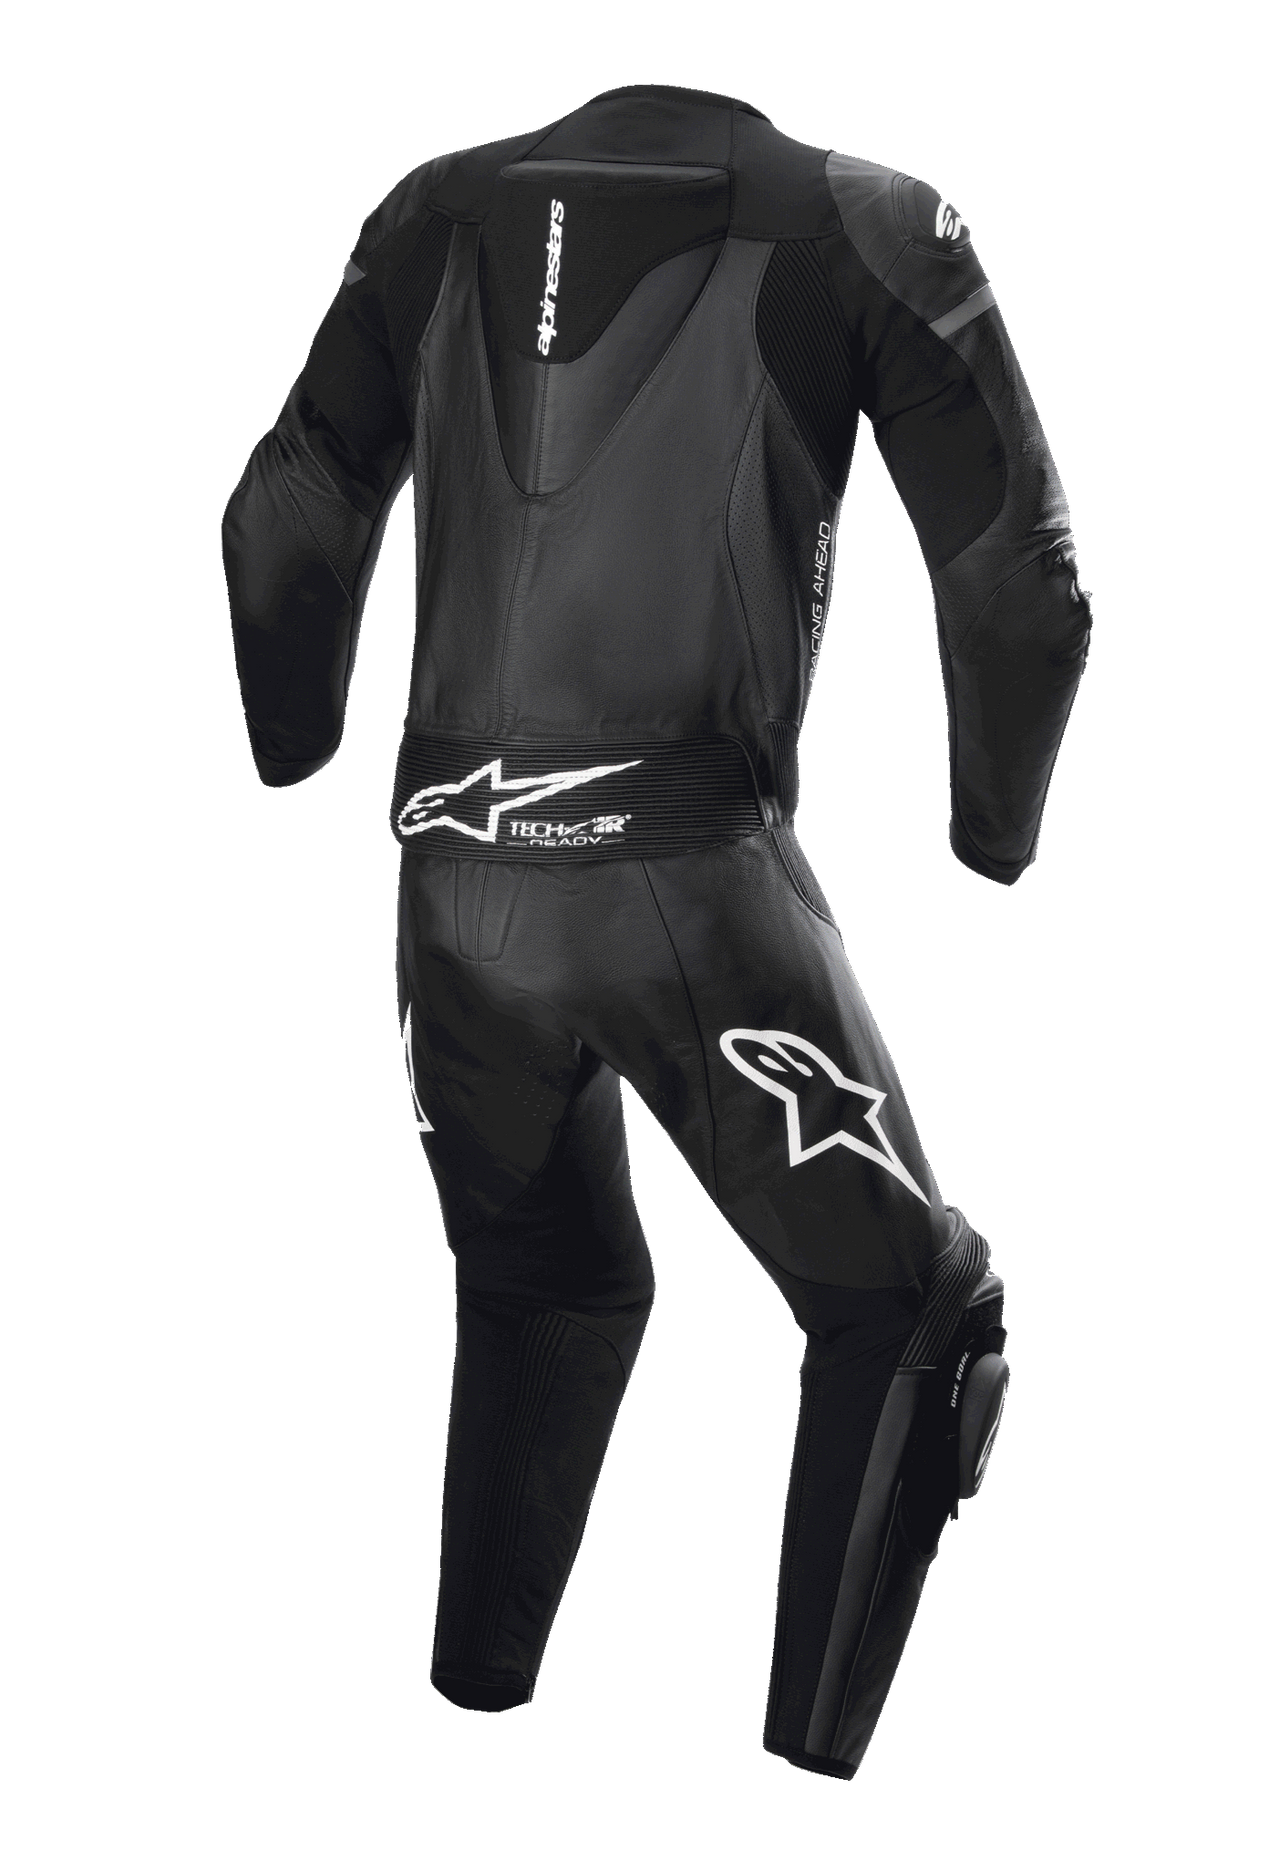 Gp Force Lurv 2-Piece Leather Suit